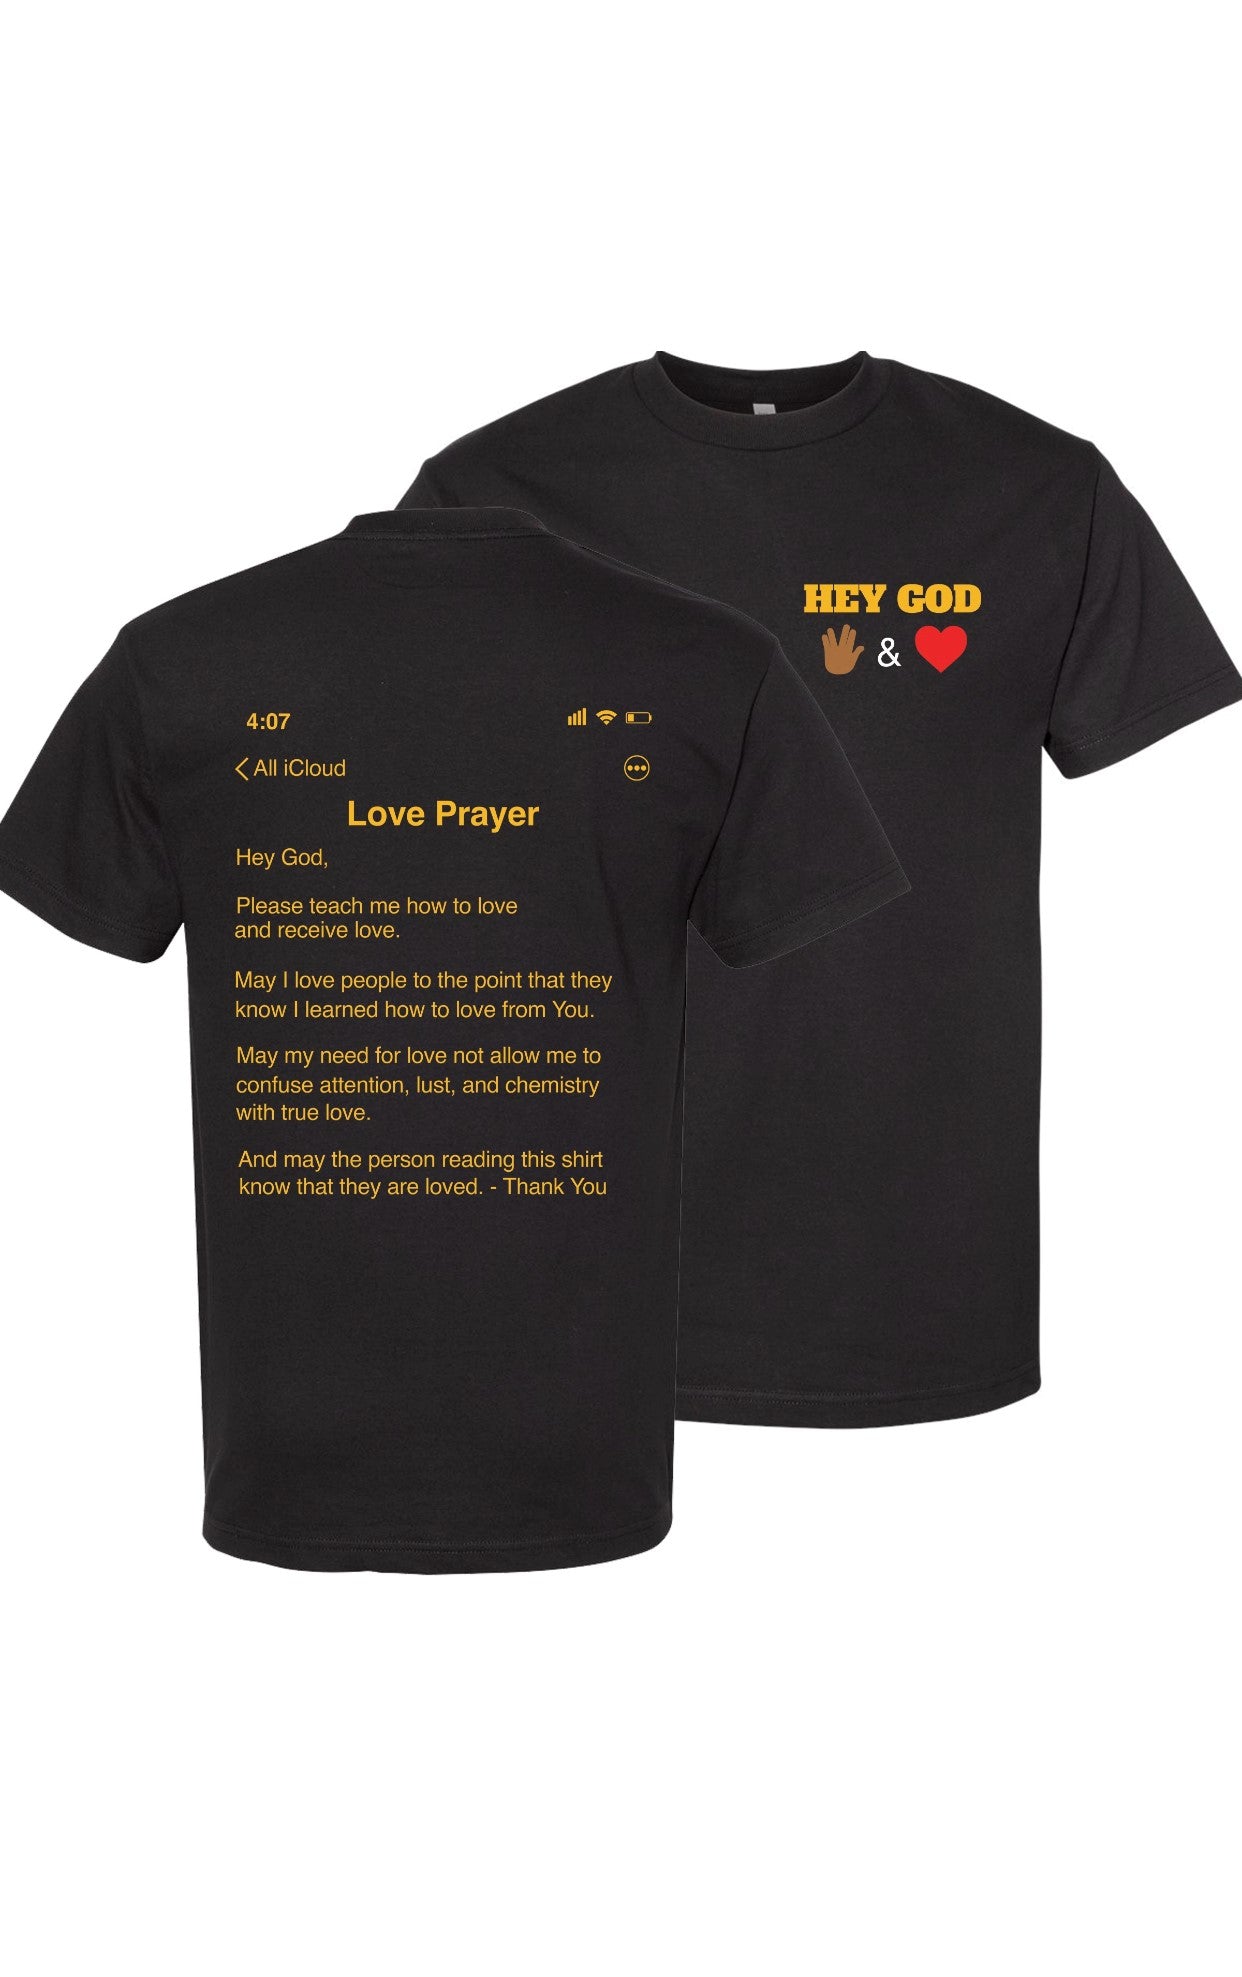 Hey God "Love" Prayer T-Shirt